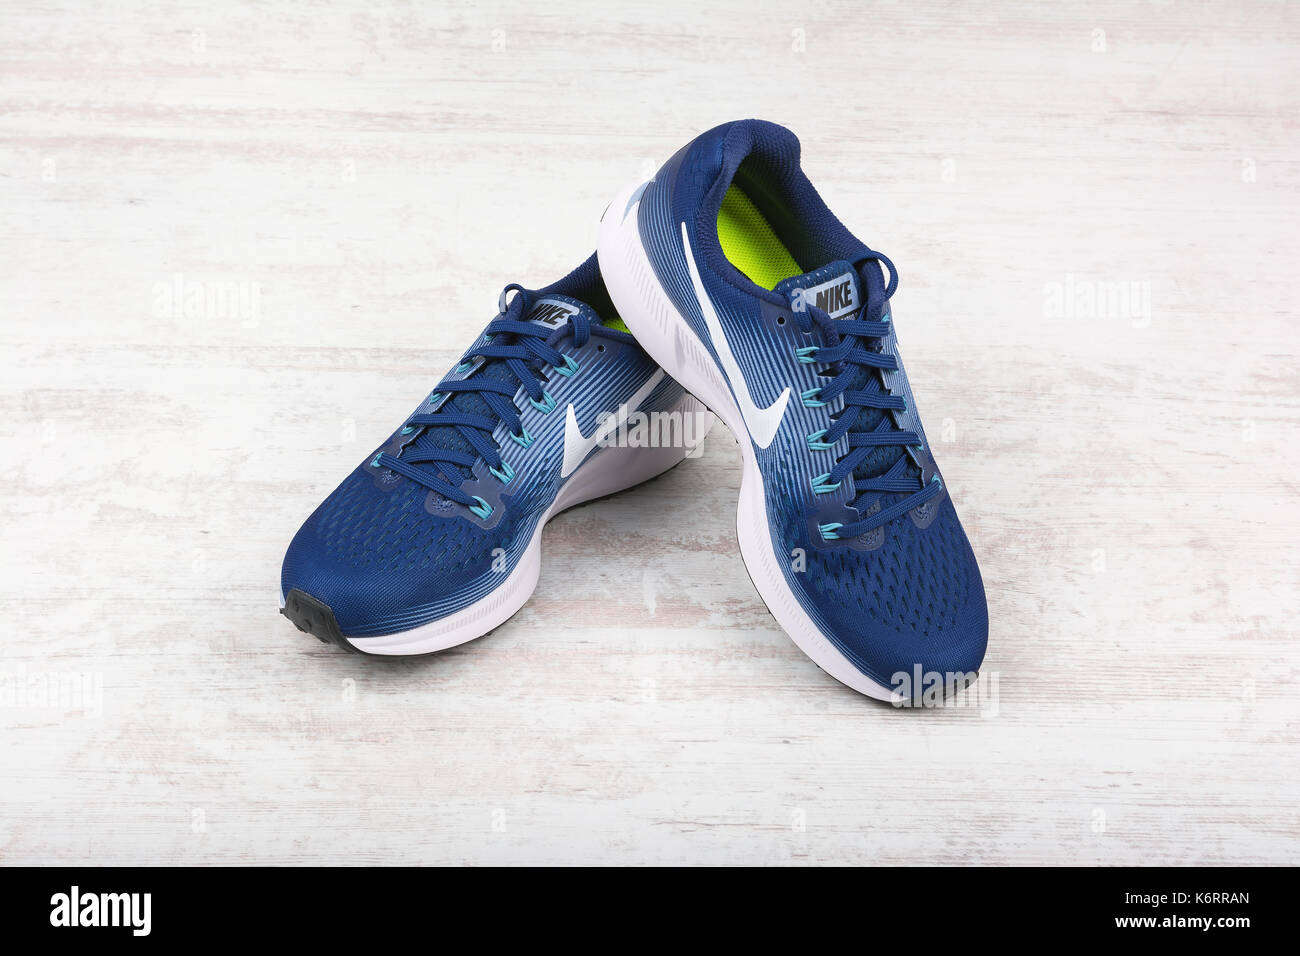 BURGAS, Bulgarien - September 6, 2017: Nike Air Zoom Pegasus 34 Damen  Laufschuhe in blau auf weiß Holz- Hintergrund. Nike ist eine globale Sport  Tuch Stockfotografie - Alamy